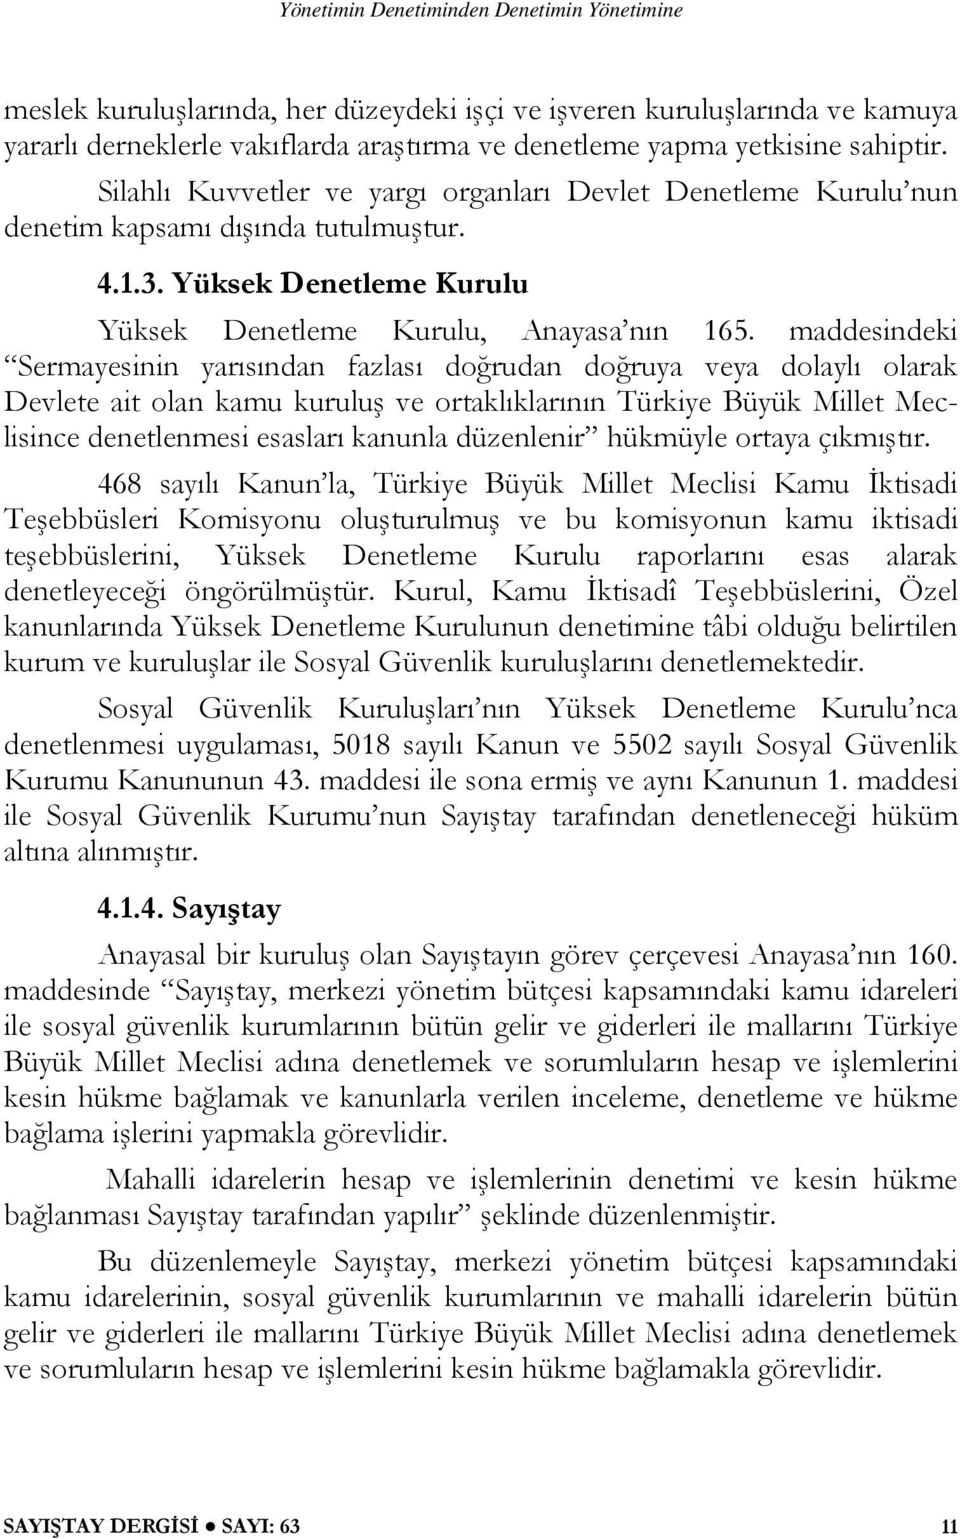 maddesindeki Sermayesinin yarısından fazlası doğrudan doğruya veya dolaylı olarak Devlete ait olan kamu kuruluş ve ortaklıklarının Türkiye Büyük Millet Meclisince denetlenmesi esasları kanunla